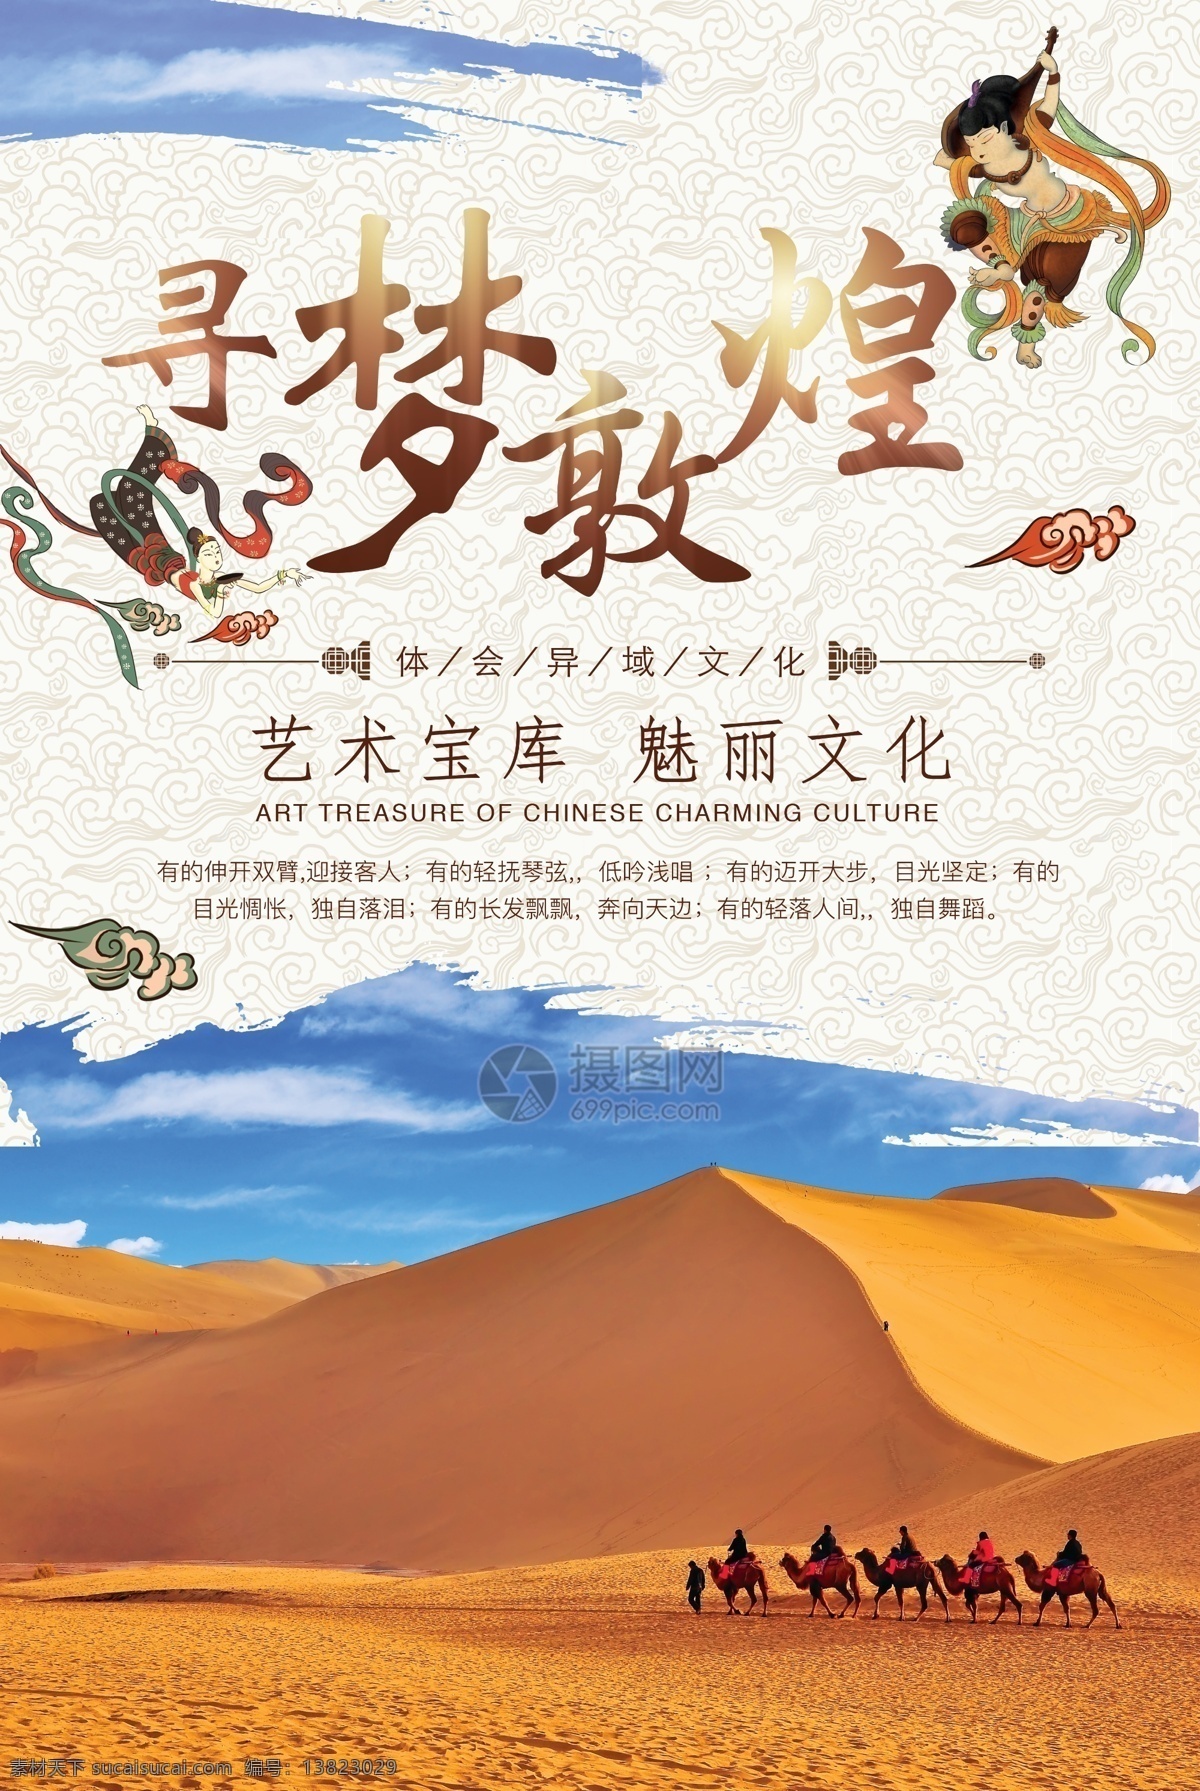 寻 梦 敦煌旅游 海报 寻梦敦煌 沙漠 旅行 骆驼 中国底纹 文化 西藏 蓝天 旅游海报 景点海拔